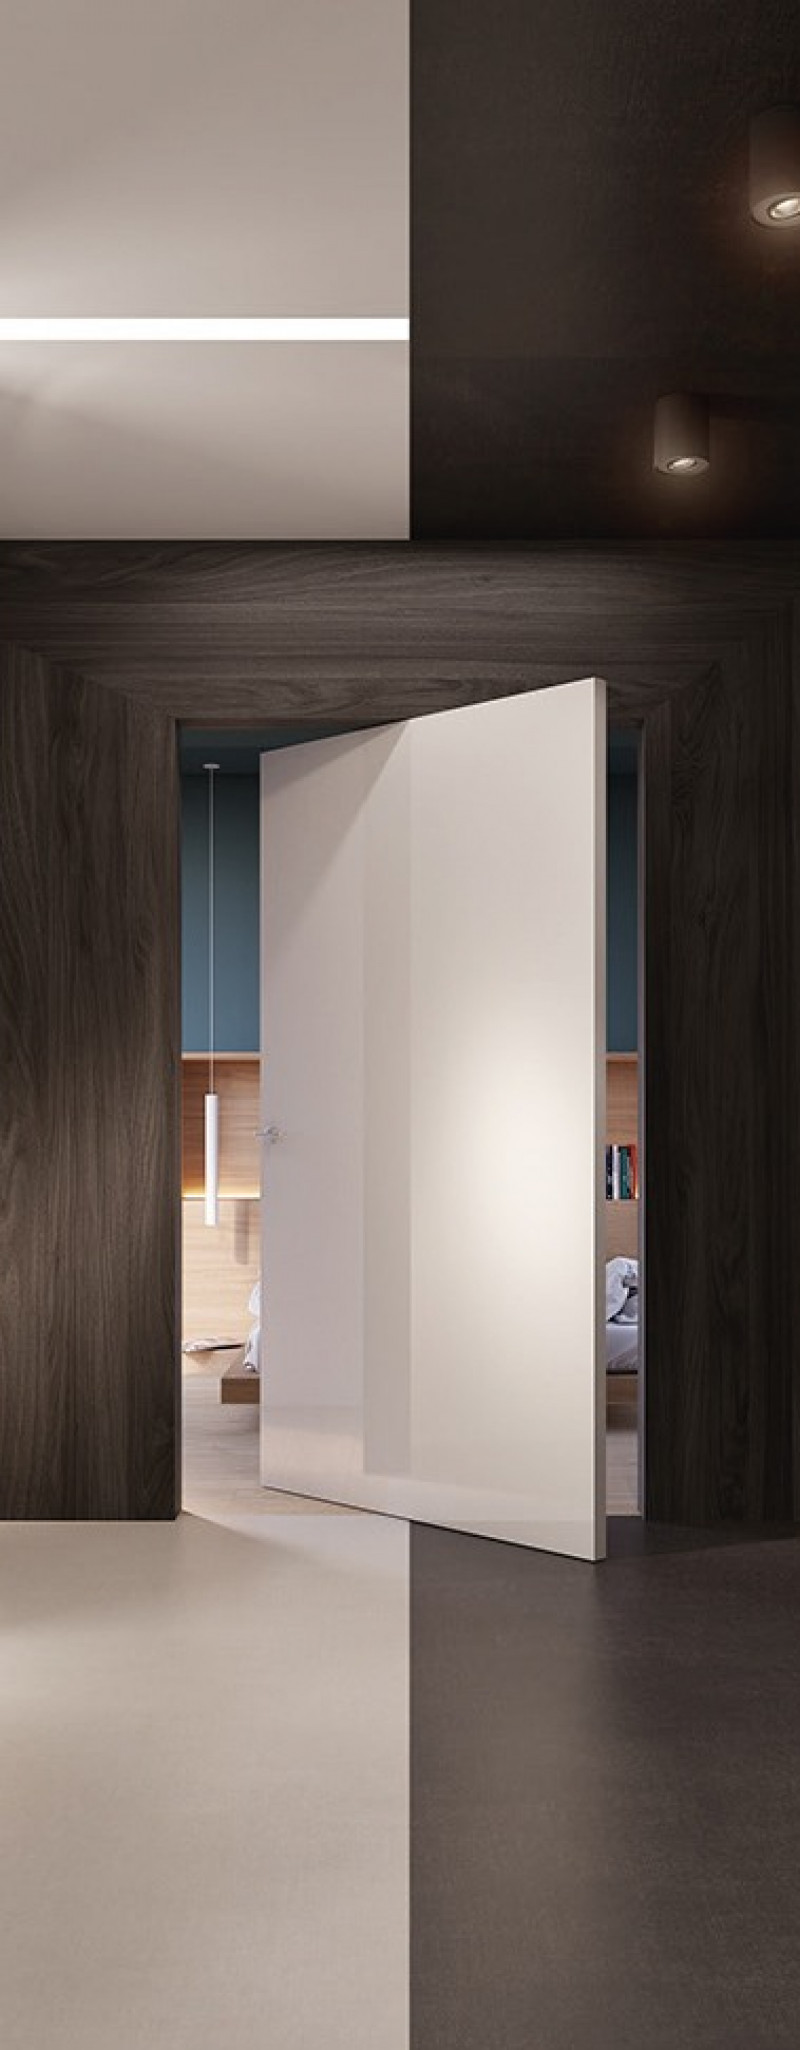 Wooden interior door with hidden aluminum frame